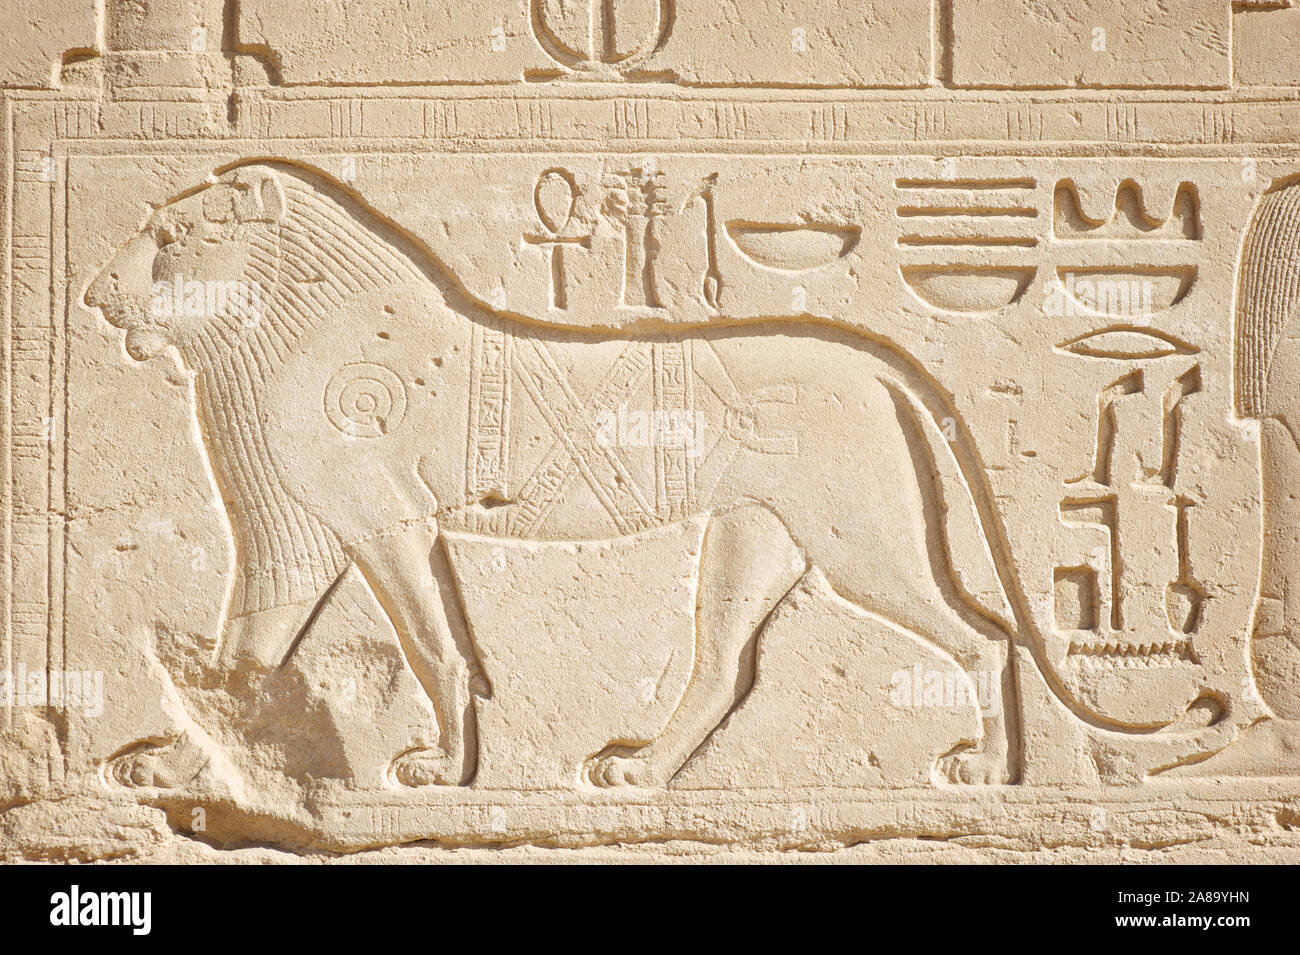 Elegante Profil der männliche Löwe geschnitzt in eine hieroglyphe auf hellen Stein am Ägyptischen Tempel von Karnak, Ägypten Stockfoto